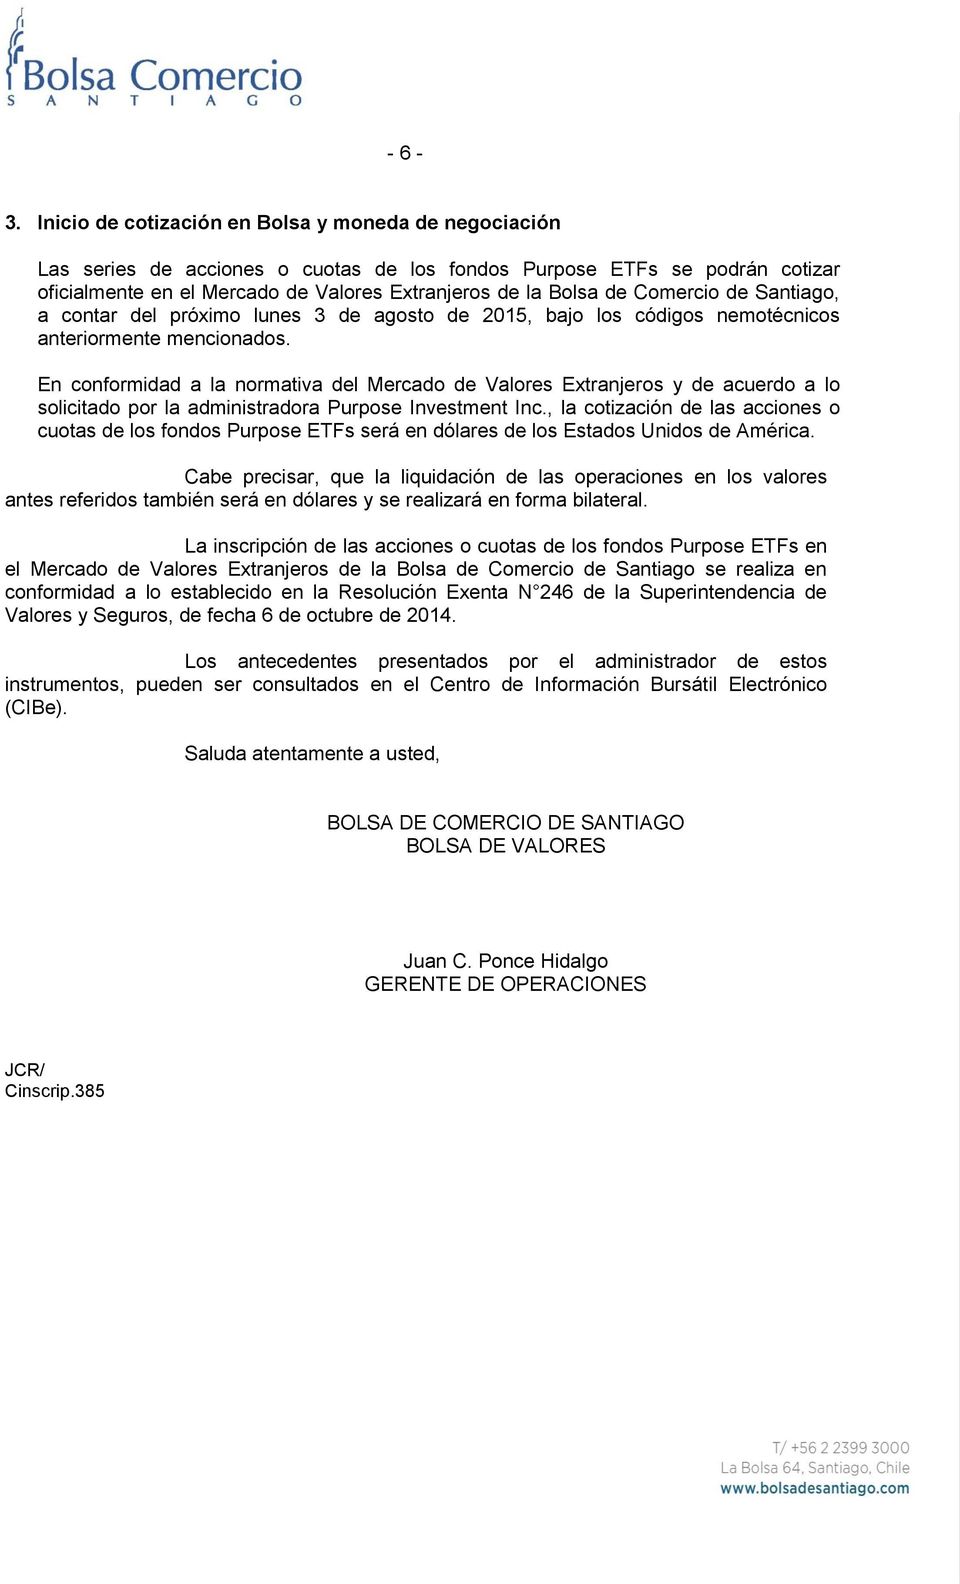 Comercio de Santiago, a contar del próximo lunes 3 de agosto de 2015, bajo los códigos nemotécnicos anteriormente mencionados.